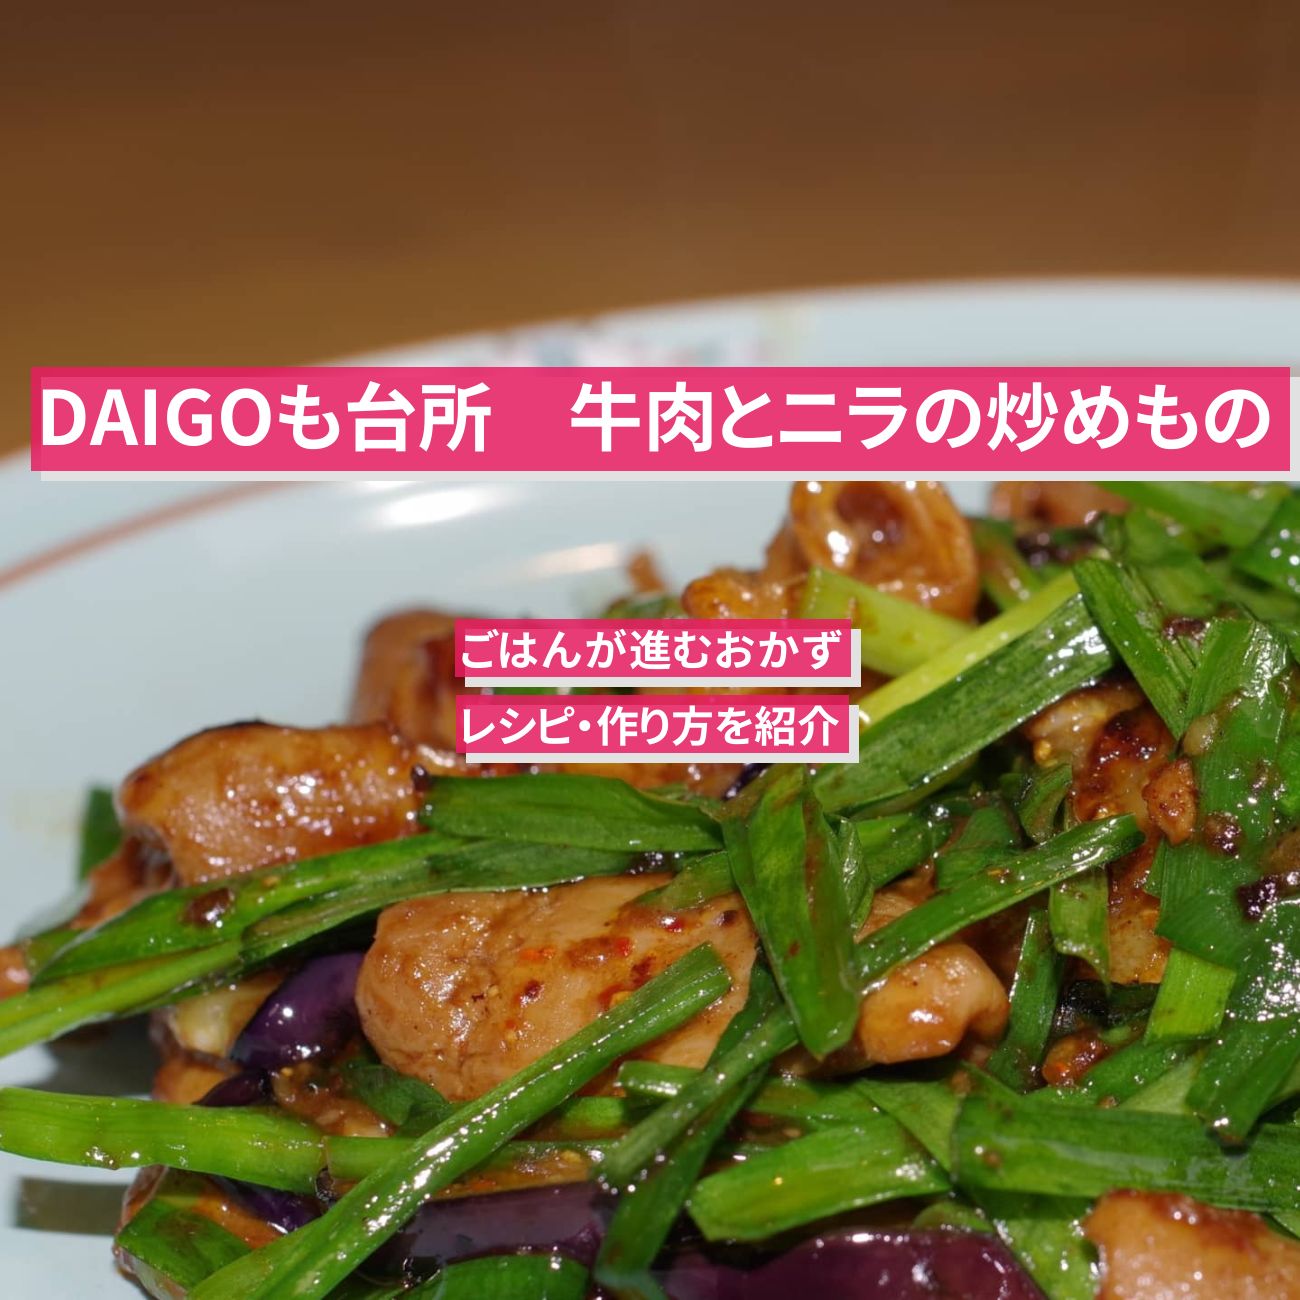 【DAIGOも台所】『牛肉とニラの炒めもの』のレシピ・作り方を紹介